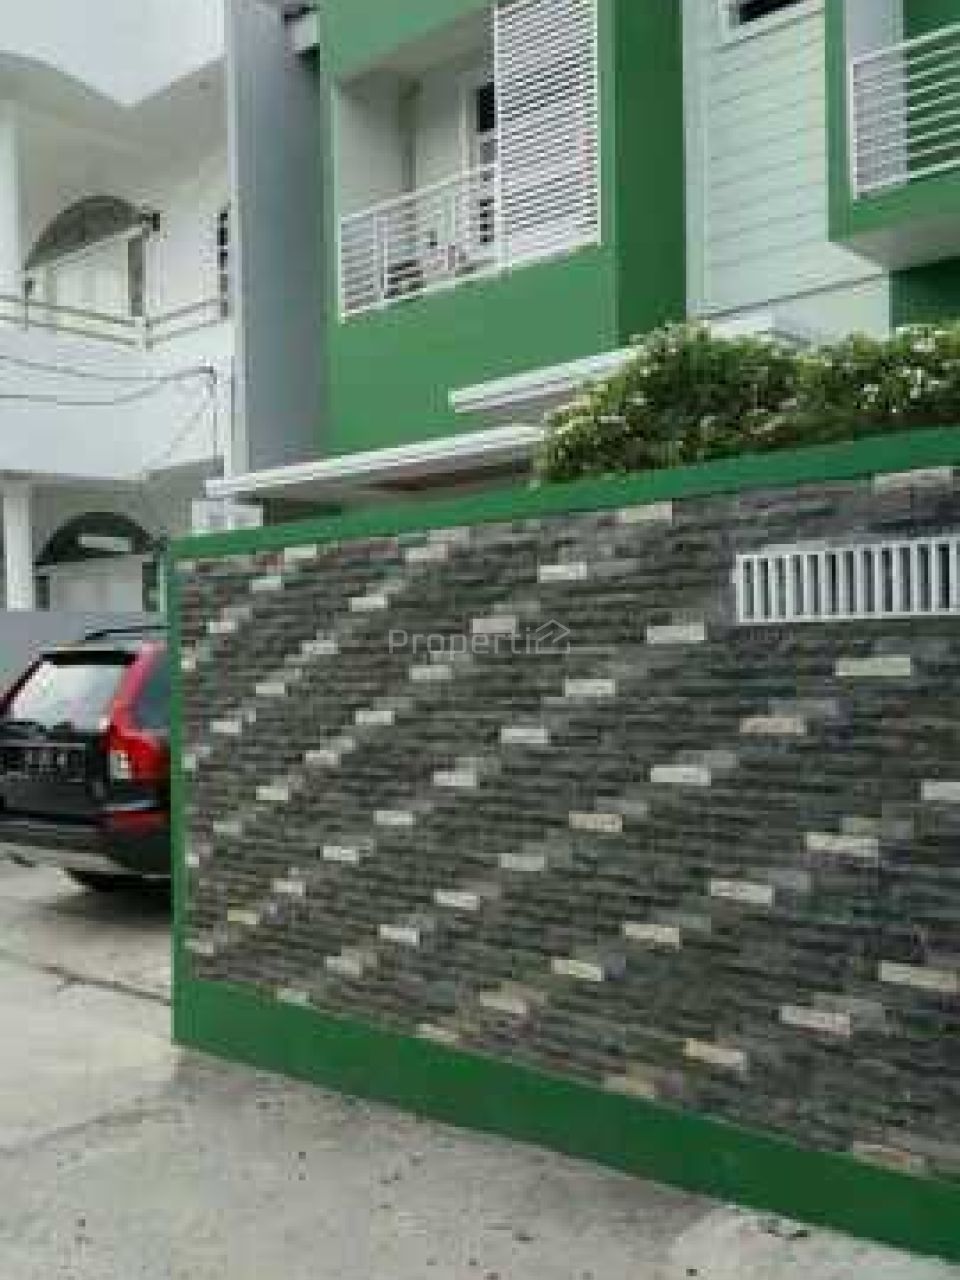 Rumah Minimalis Modern 2,5 Lantai Full Furnished di Jagakarsa, DKI Jakarta